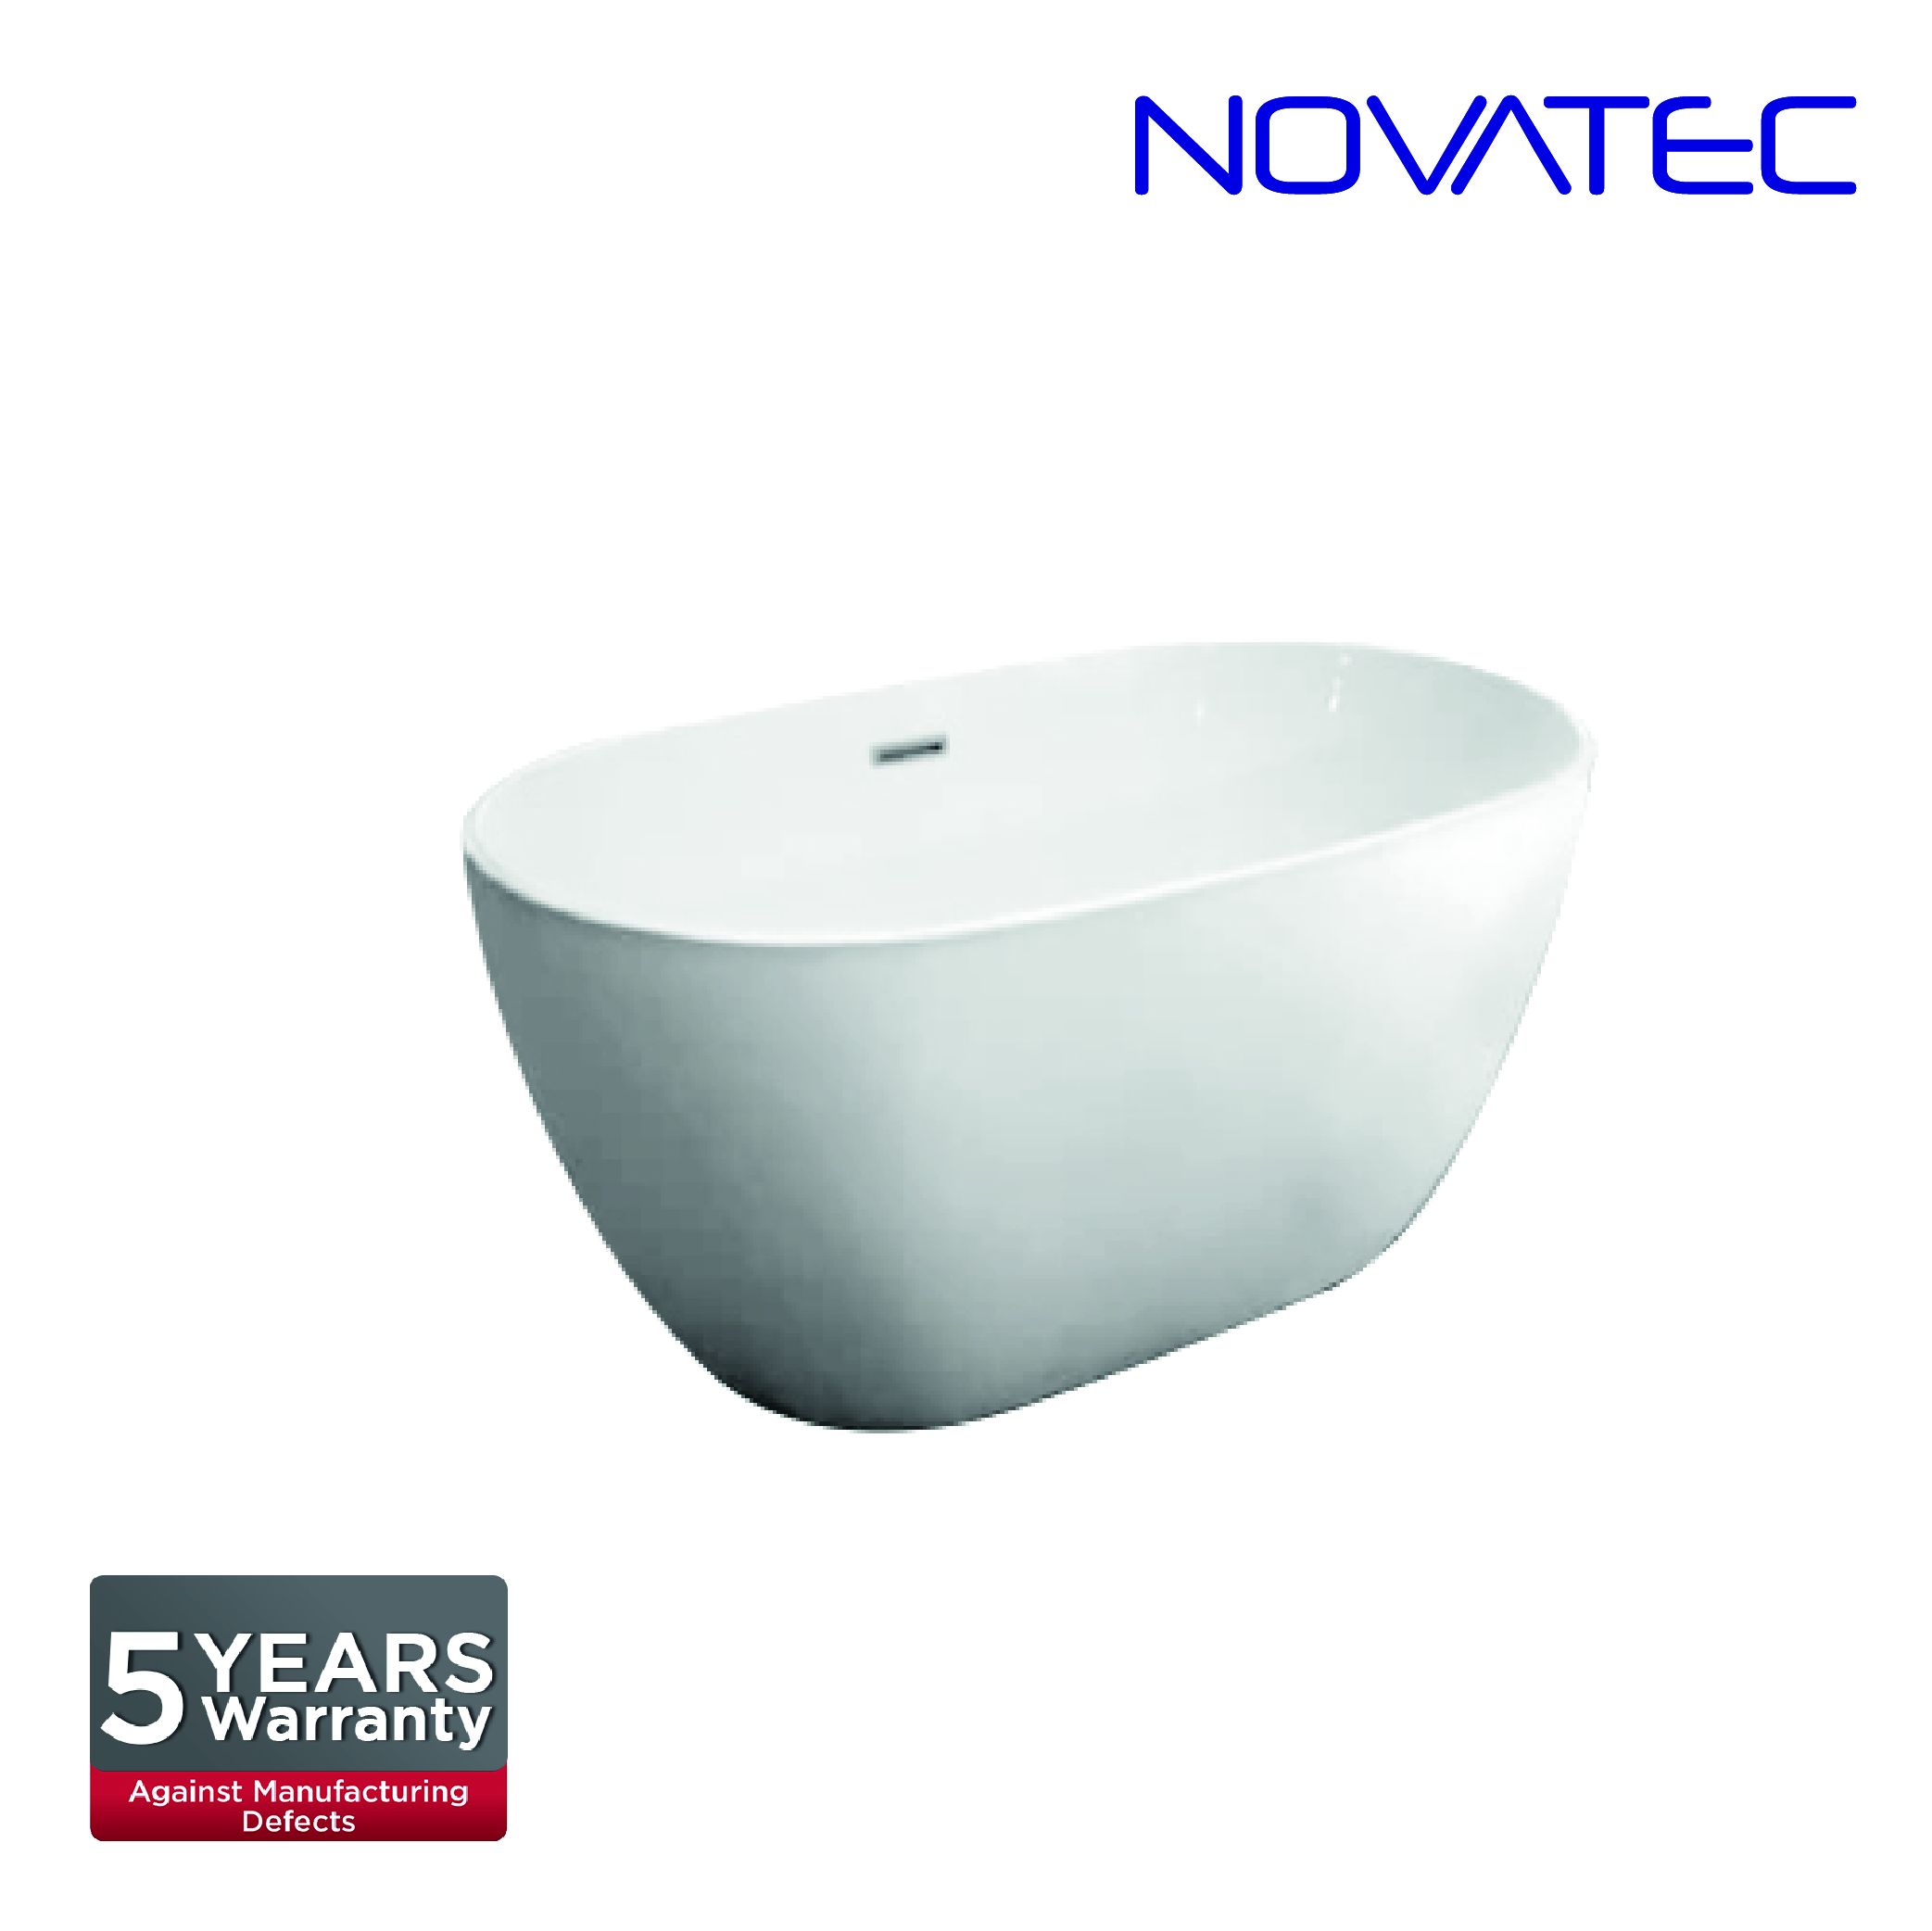 Novatec SW Geneva Bath Tub BT 160014B